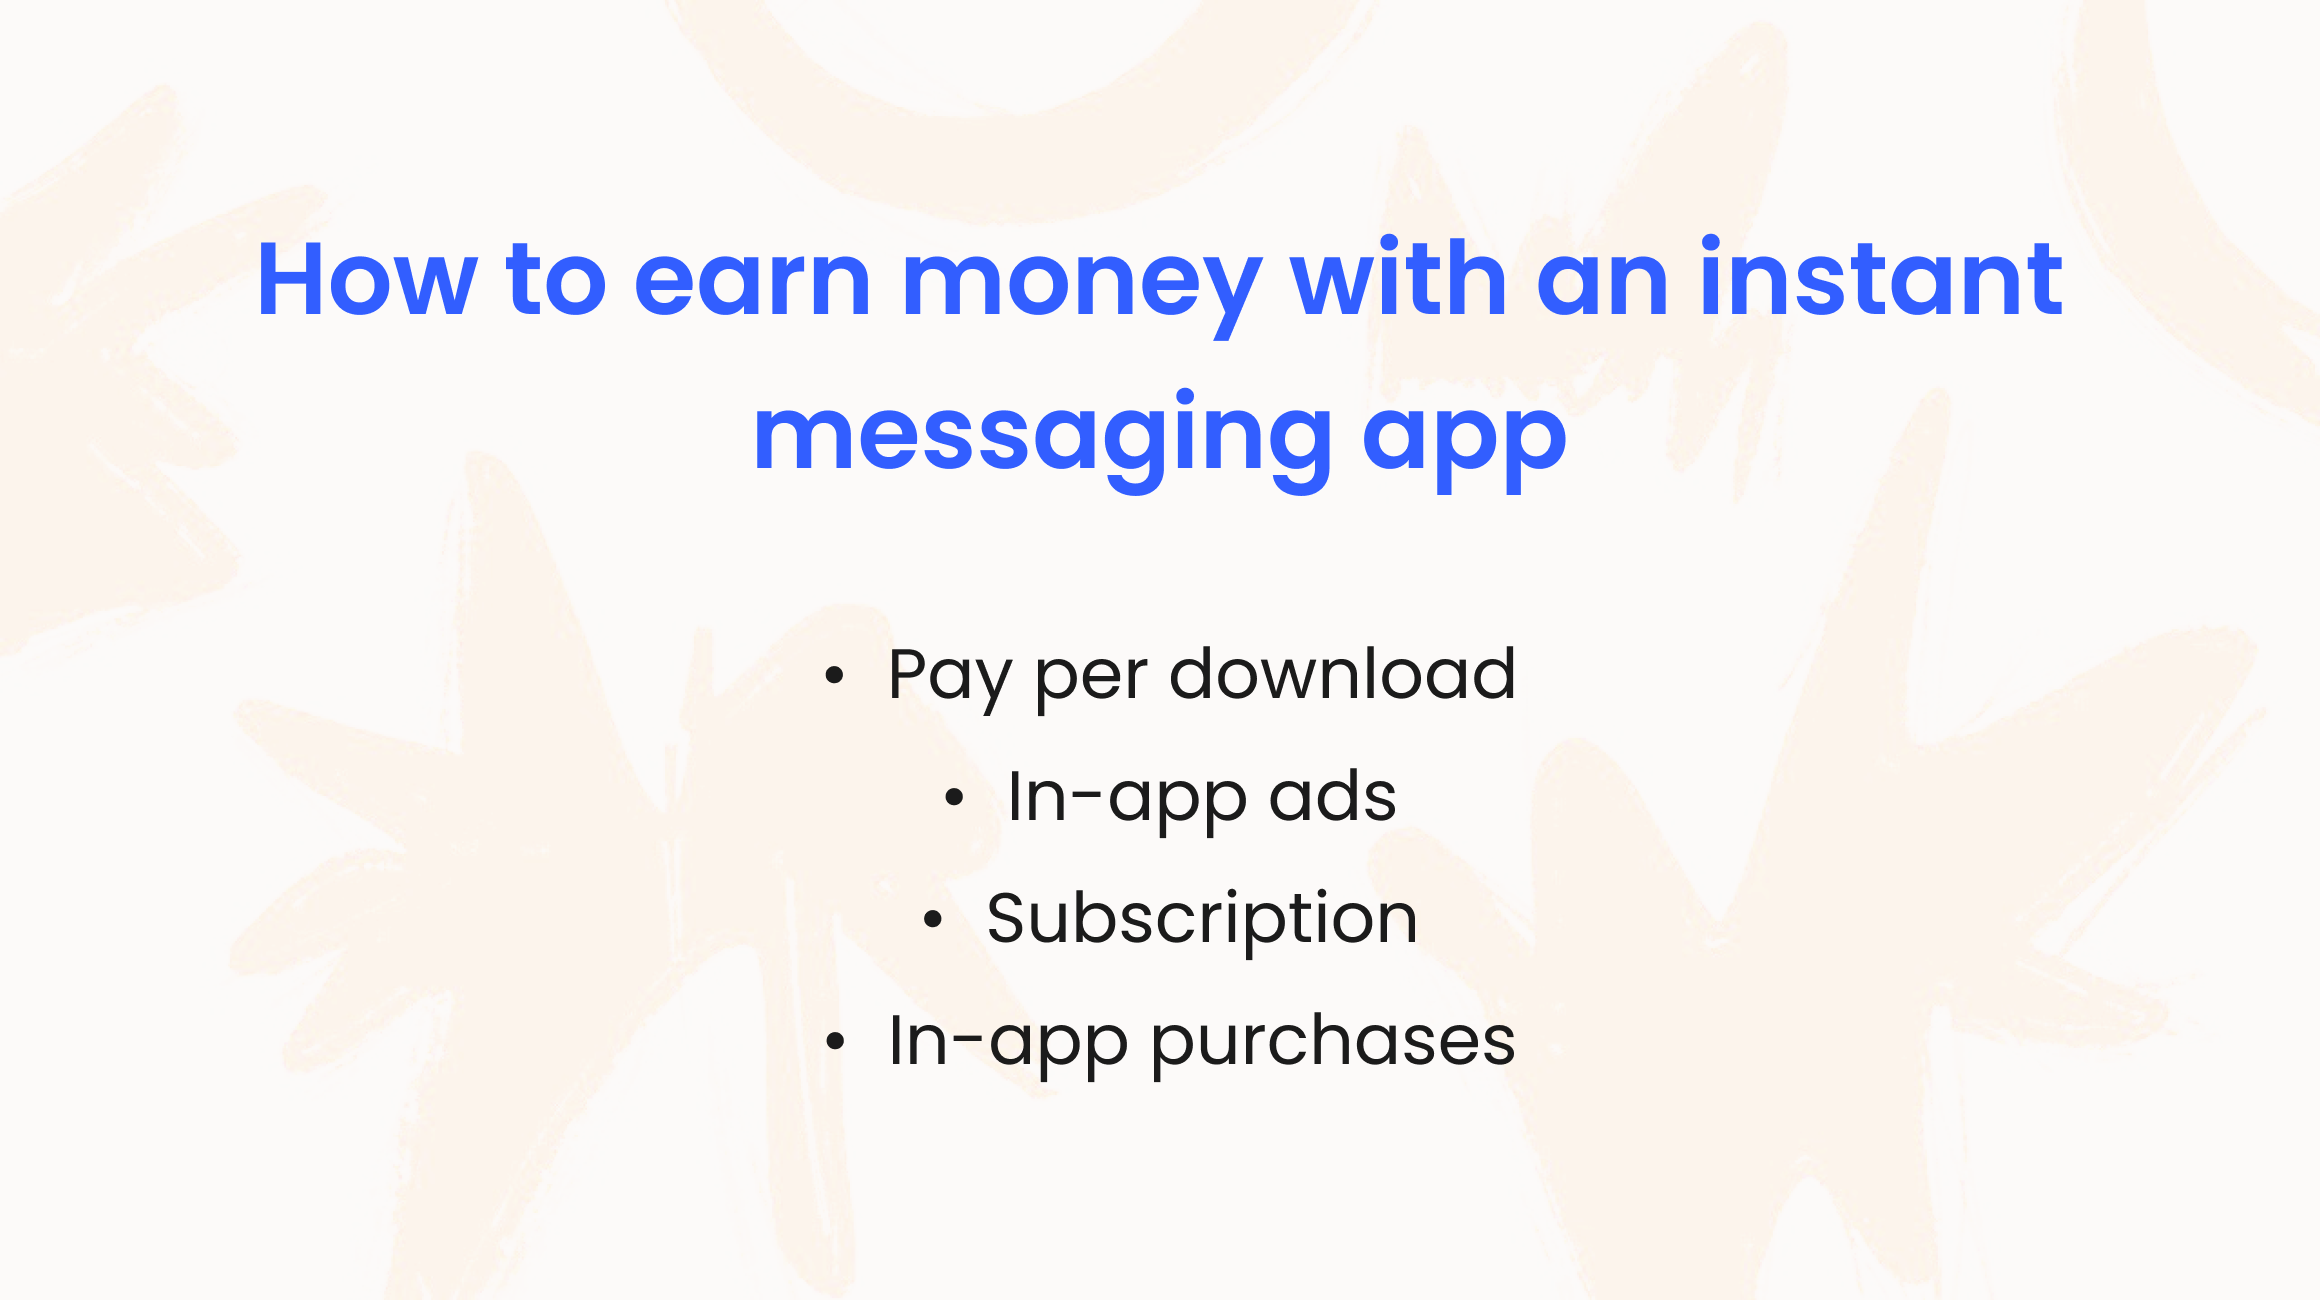 Messaging app monetization